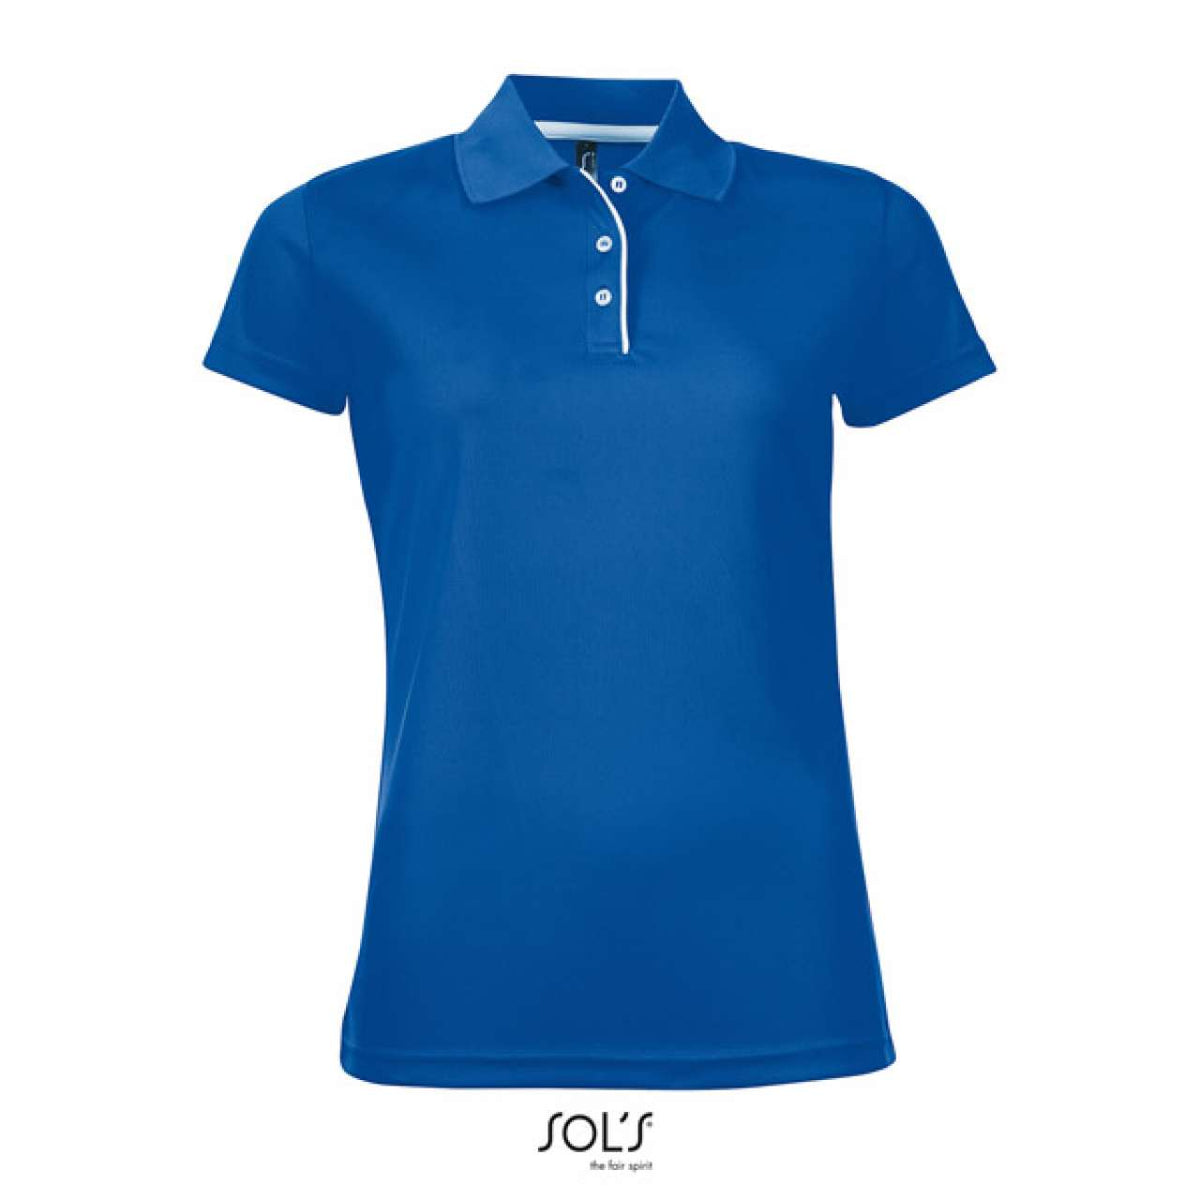 SOL'S Damen Sport Polo-Shirt Funktionspoloshirt Poloshirt